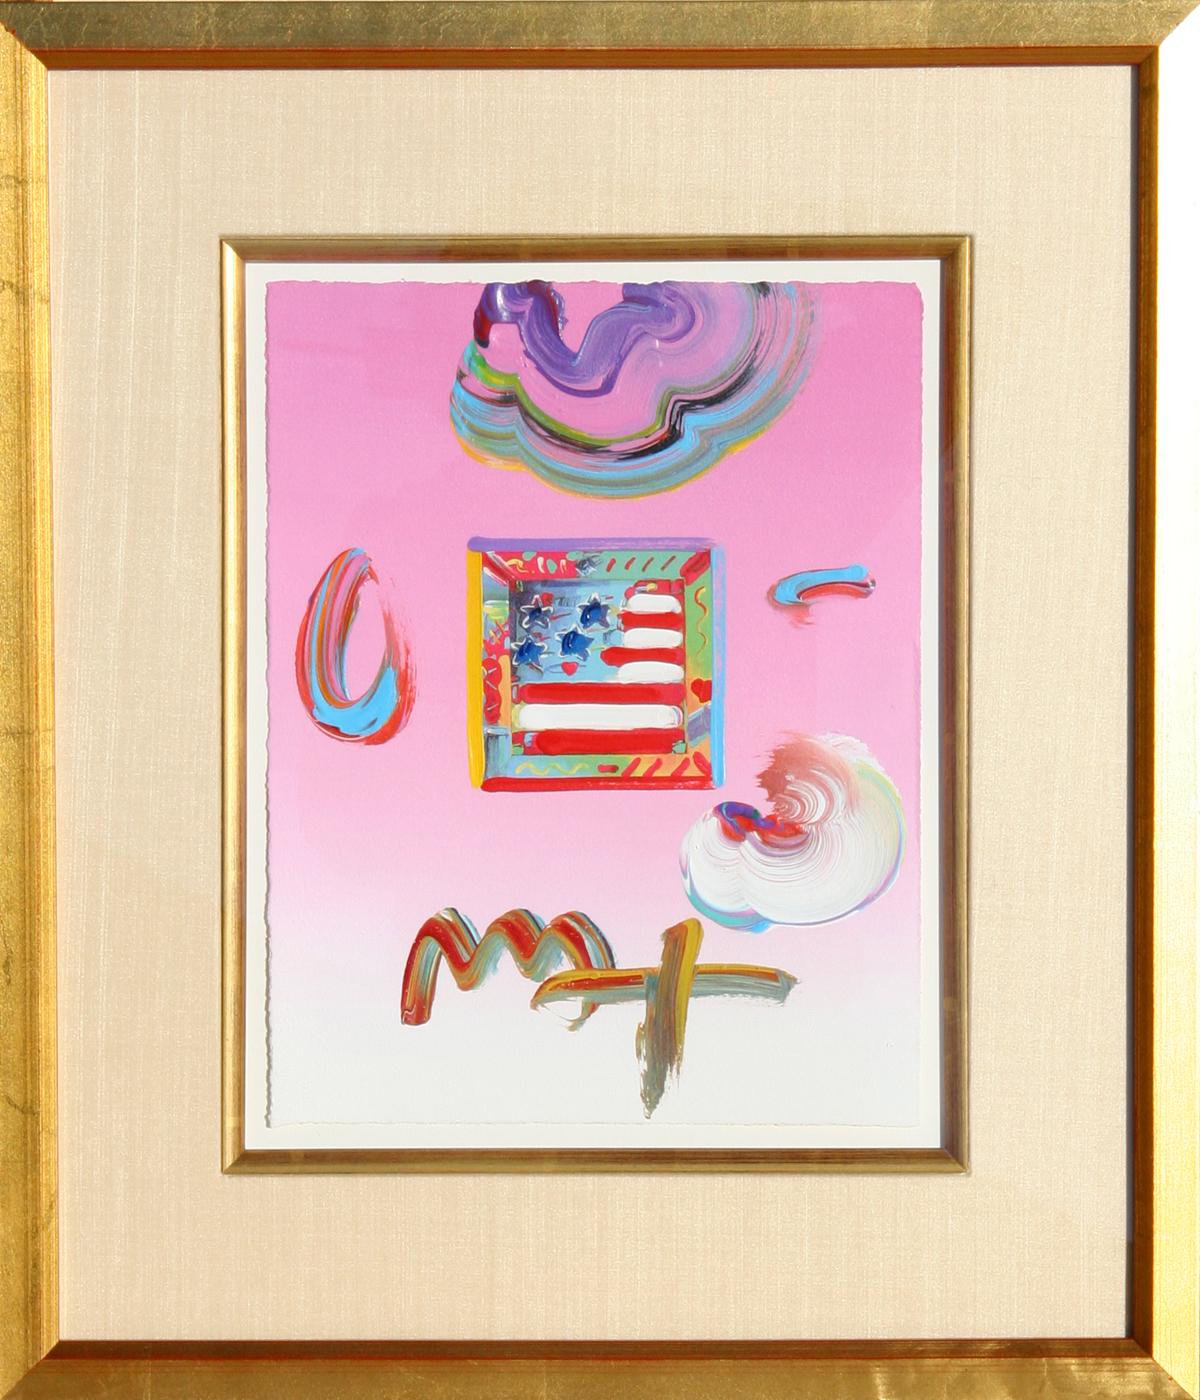 Künstler: Peter Max, deutsch/amerikanisch (1937 - )
Titel: Flagge (Rosa)
Jahr: 2009
Medium: Acryl und Collage auf Papier, signiert 
Größe: 11 in. x 8.5 in. (27,94 cm x 21,59 cm)
Rahmengröße: 20 x 17 Zoll